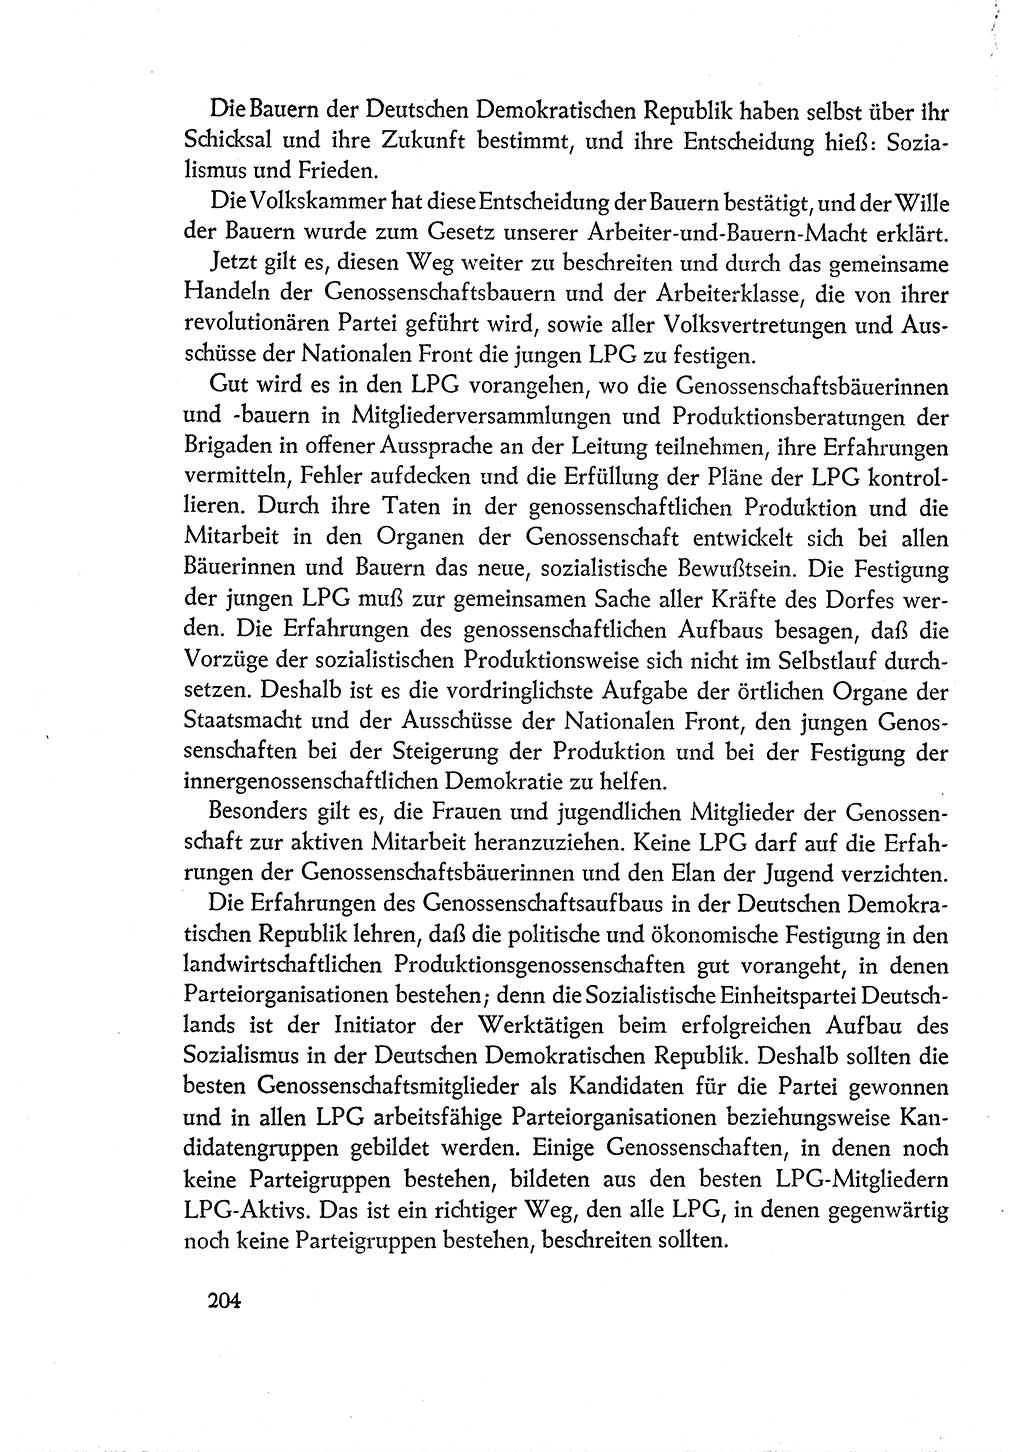 Dokumente der Sozialistischen Einheitspartei Deutschlands (SED) [Deutsche Demokratische Republik (DDR)] 1960-1961, Seite 204 (Dok. SED DDR 1960-1961, S. 204)